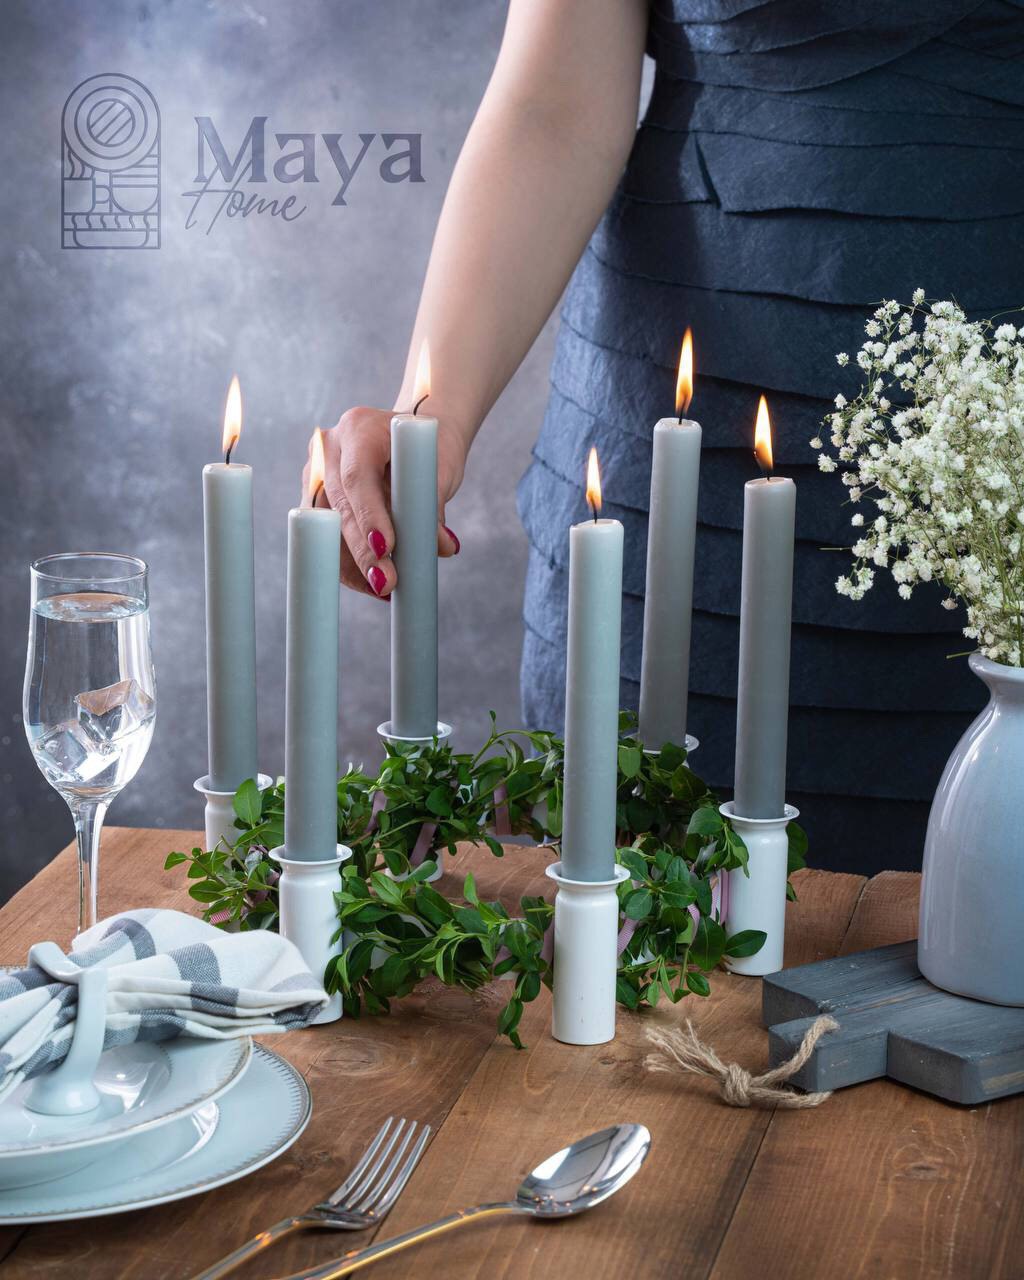 خرید آنلاین جاشمعی maya,Maya candle holder,جا شمعی مایا,تخفیفانه جاشمعی maya,خرید پستی جاشمعی maya,